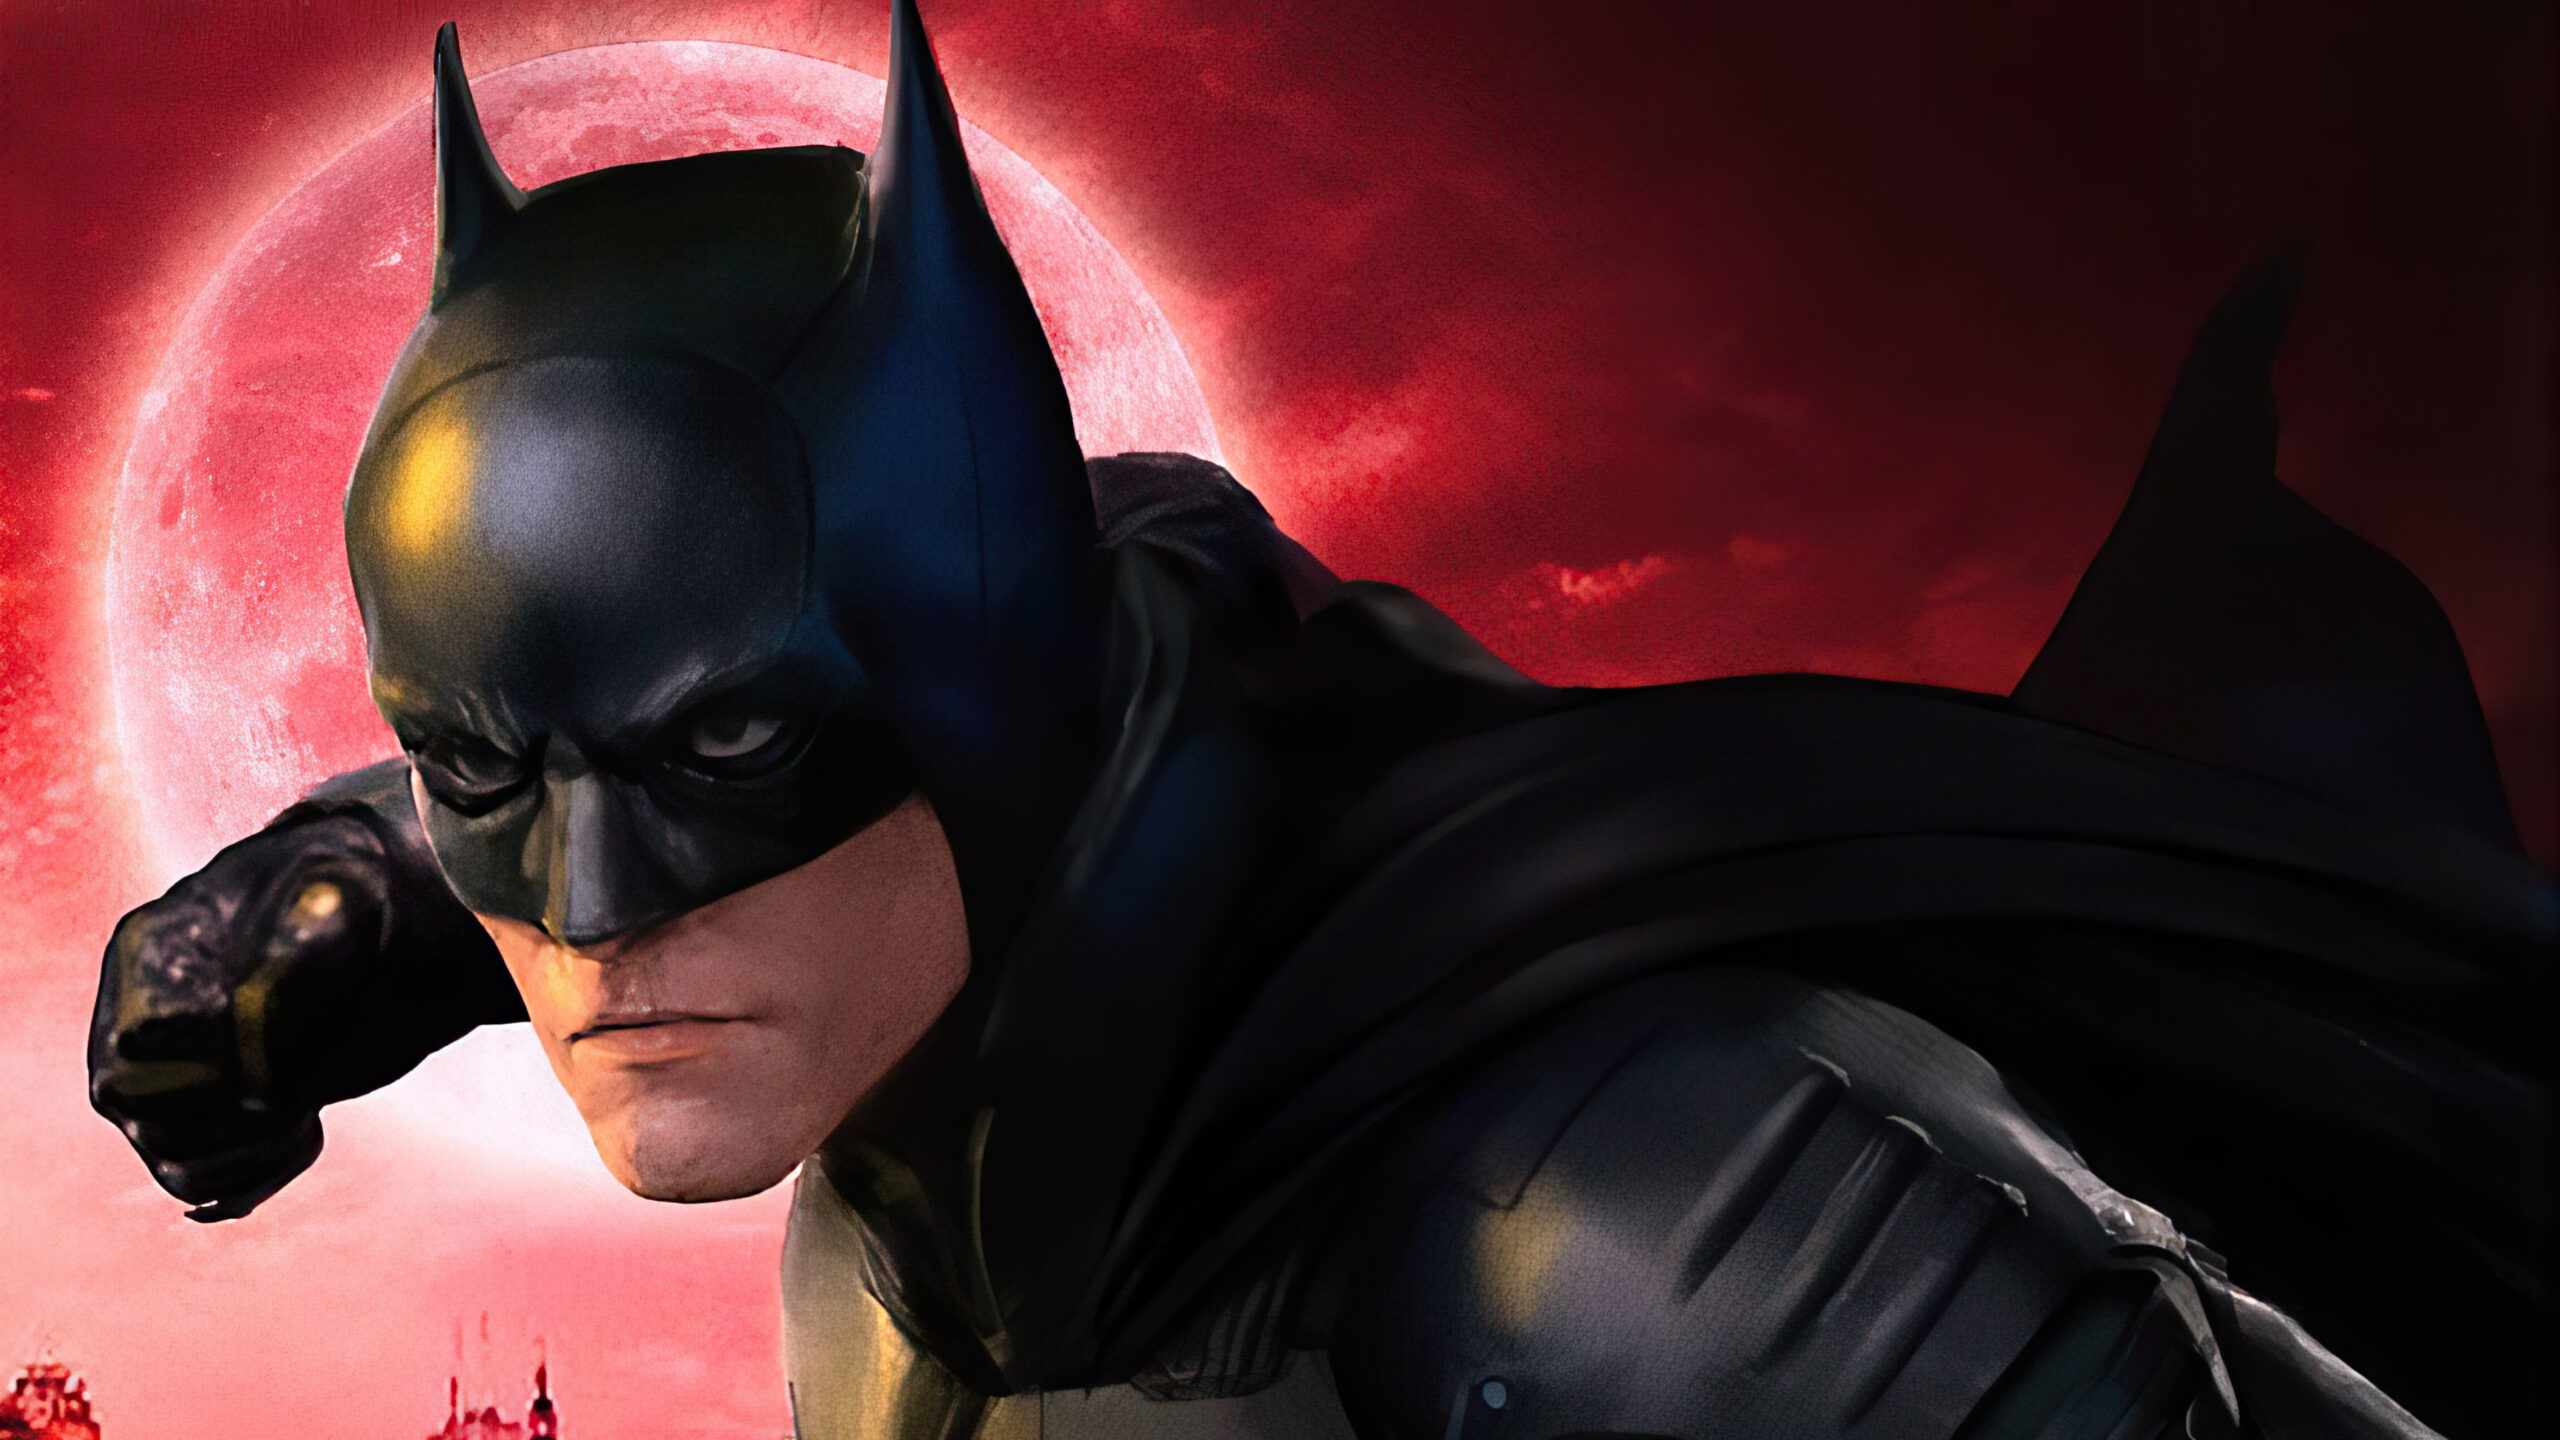 Warner Bros. Бэтмен афиша новости трейлер супергерои 